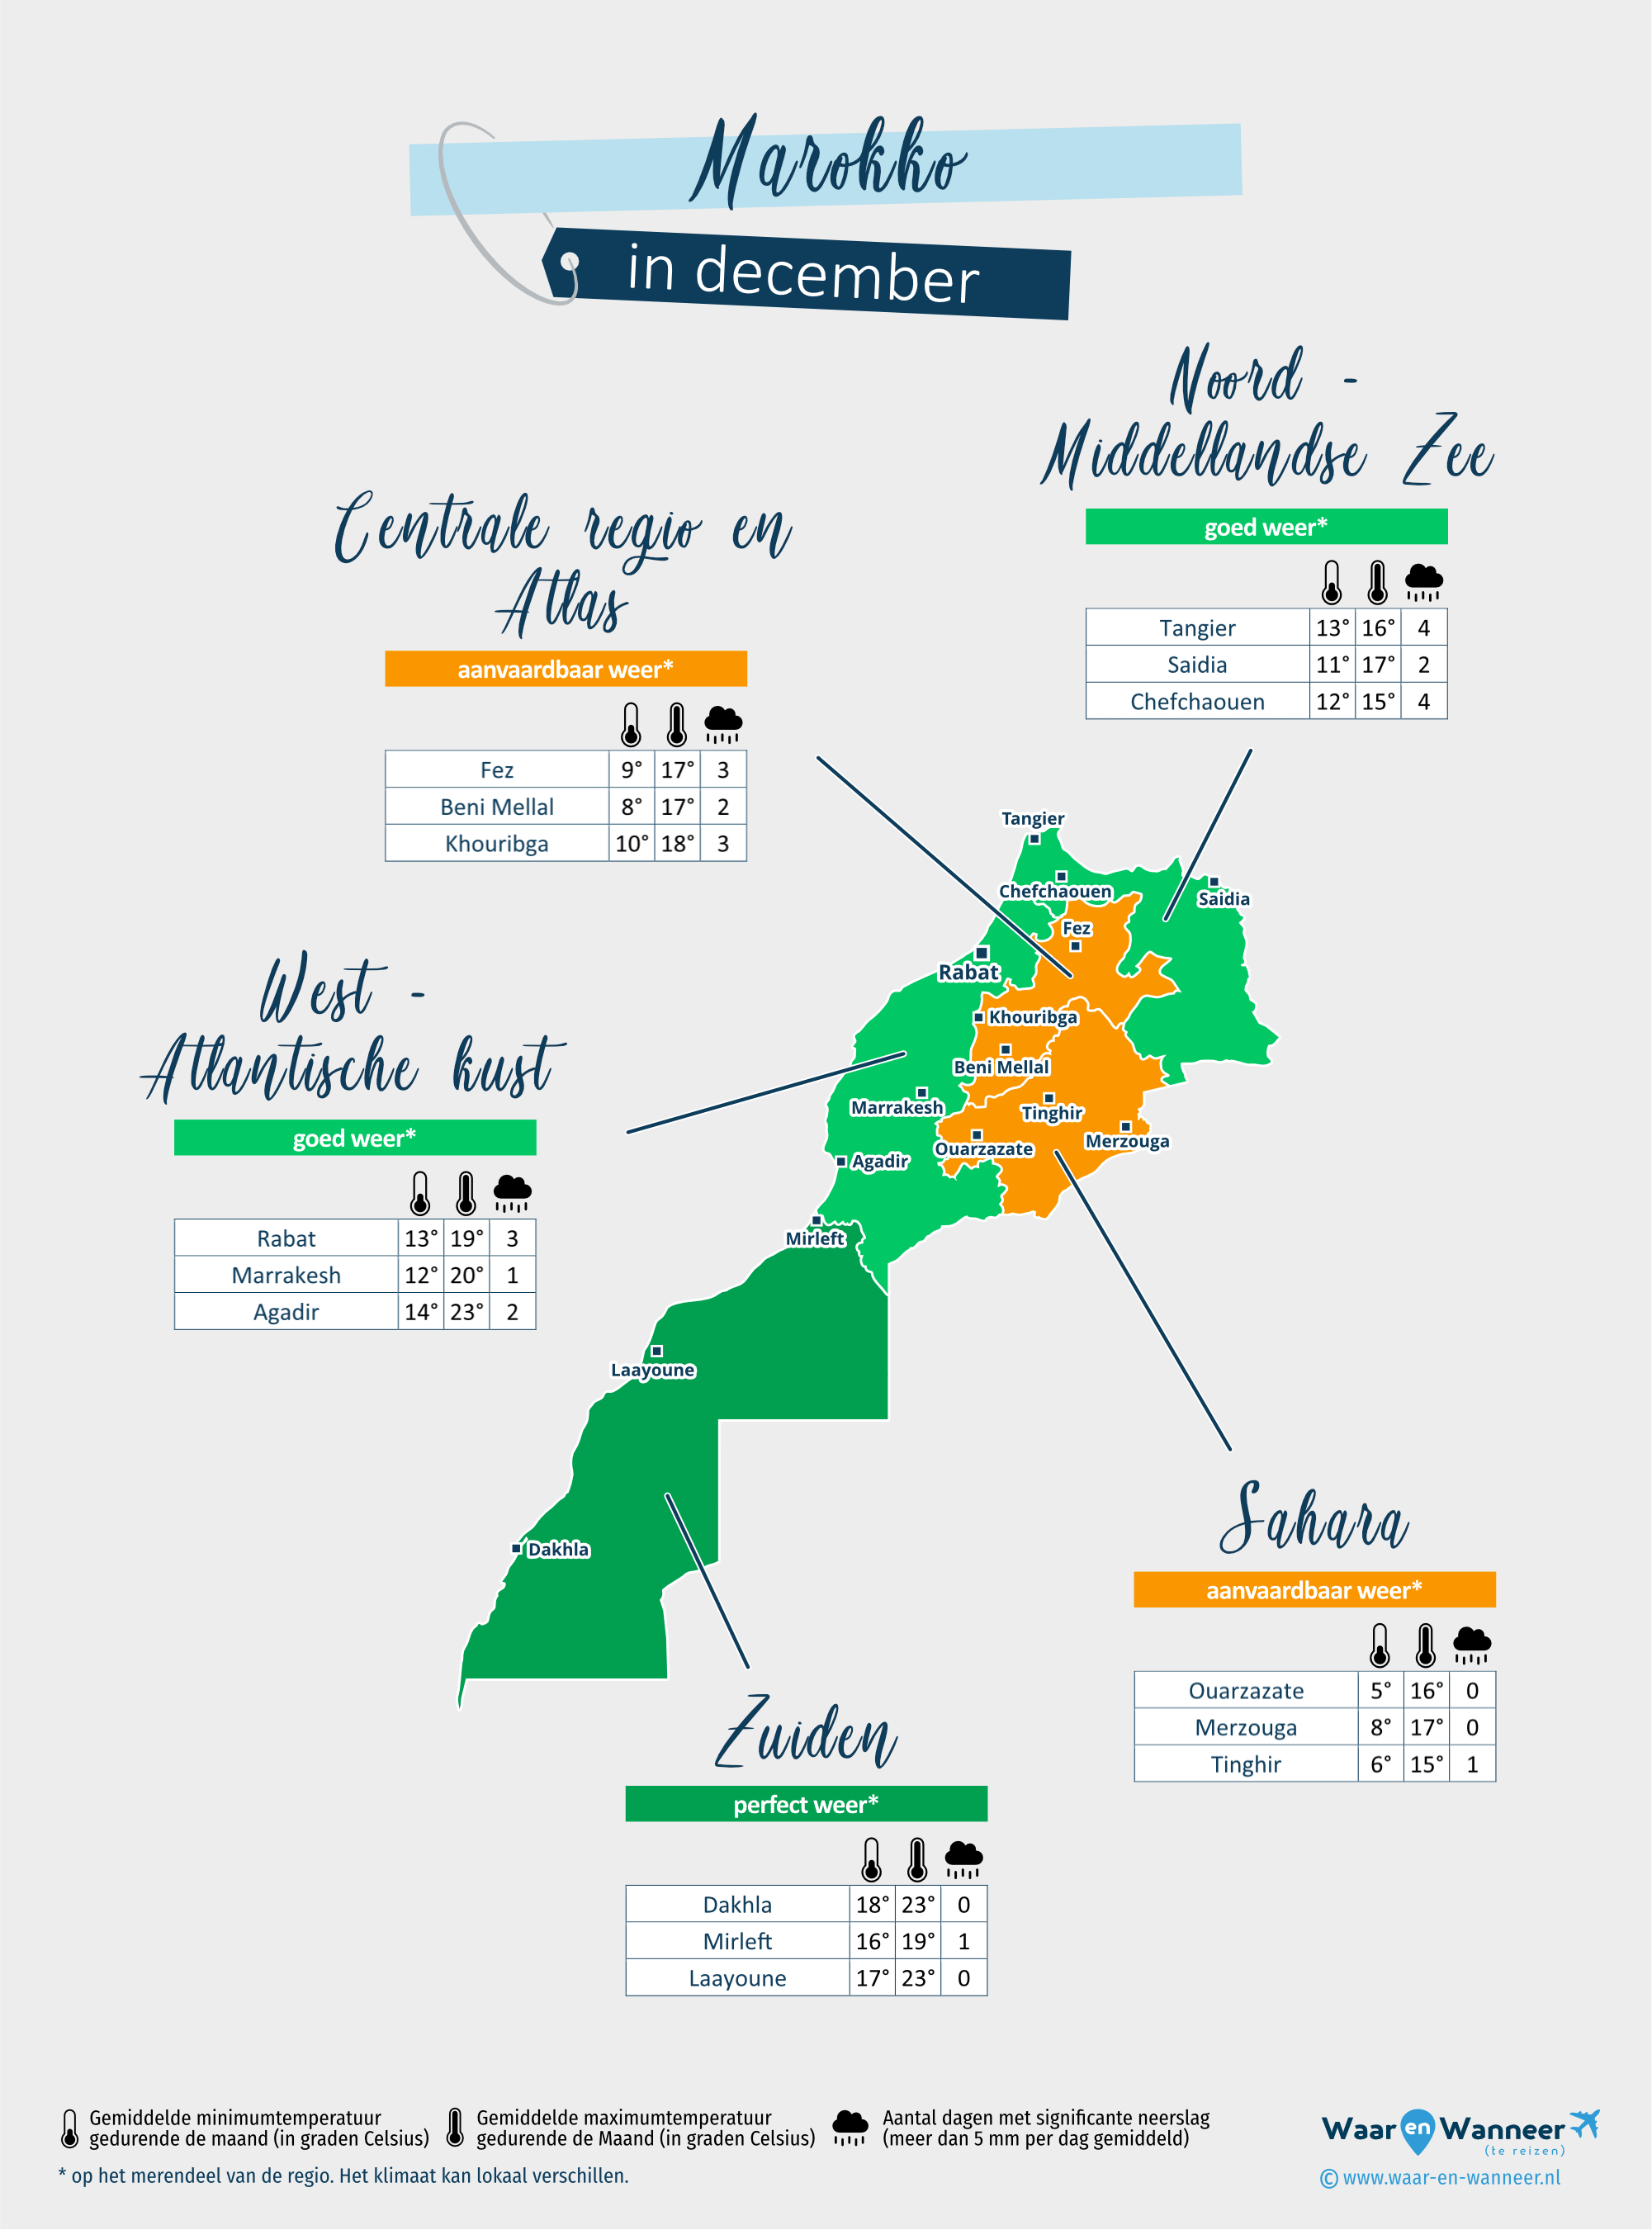 Marokko: weerkaart in december in verschillende regio's